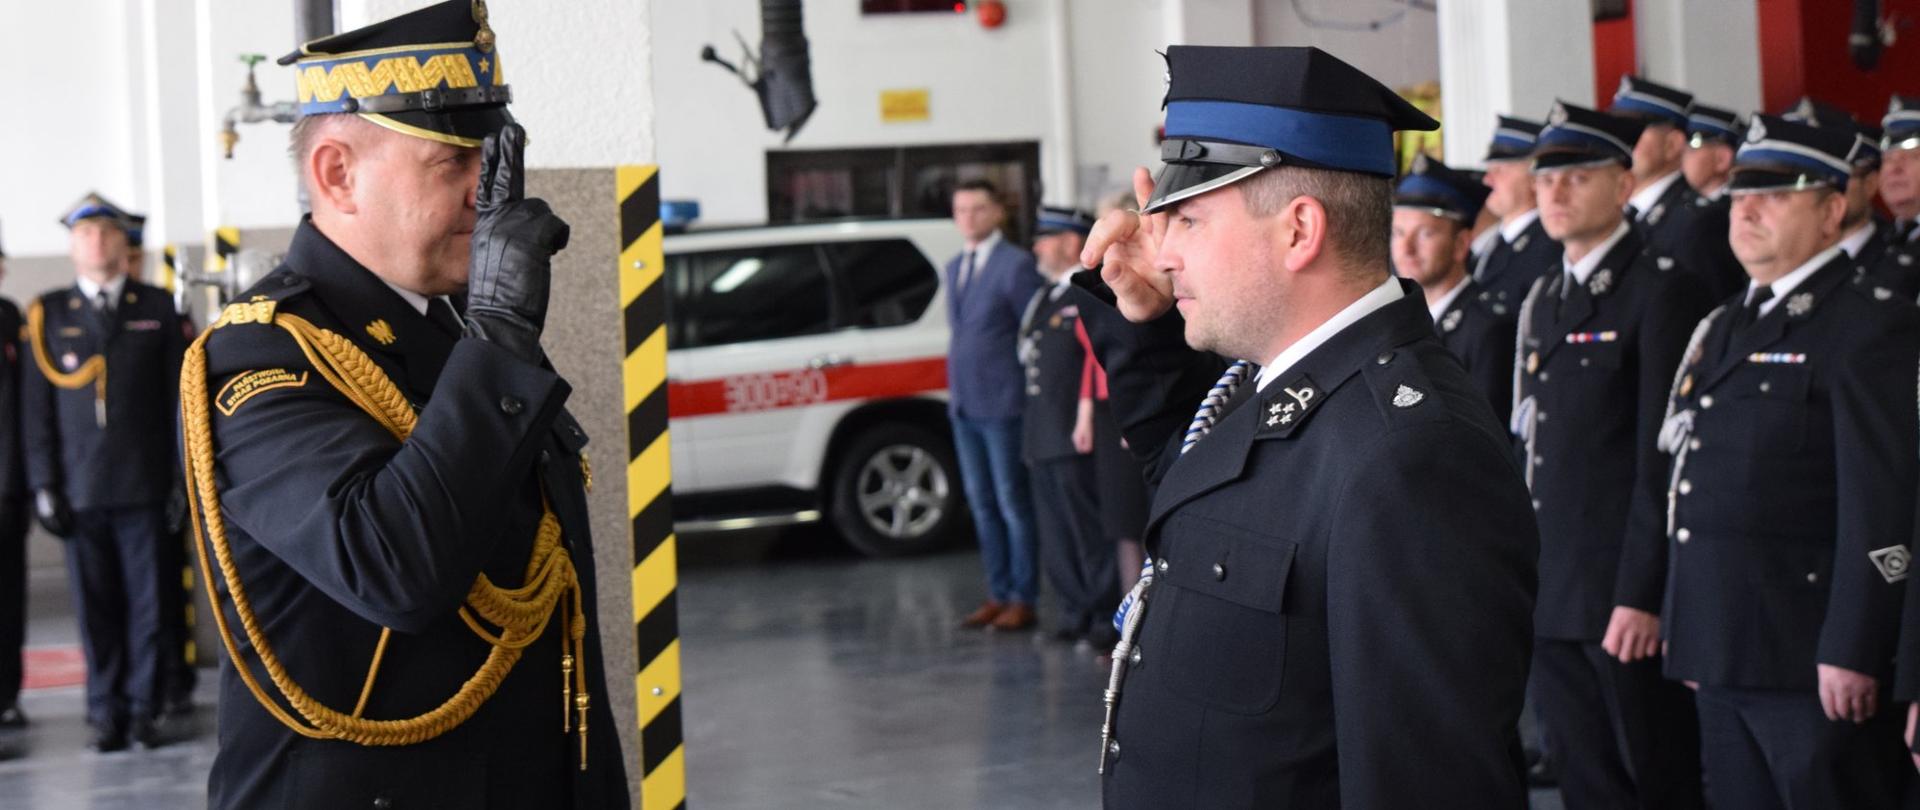 Zdjęcie zrobione wewnątrz garażu jednostki ratowniczo-gaśniczej. Po lewej stronie generał PSP w mundurze galowym salutuje, po prawej stronie strażak ochotni w mundurze galowym salutuje. W tle zebrani na zbiórce strażacy PSP i OSP.